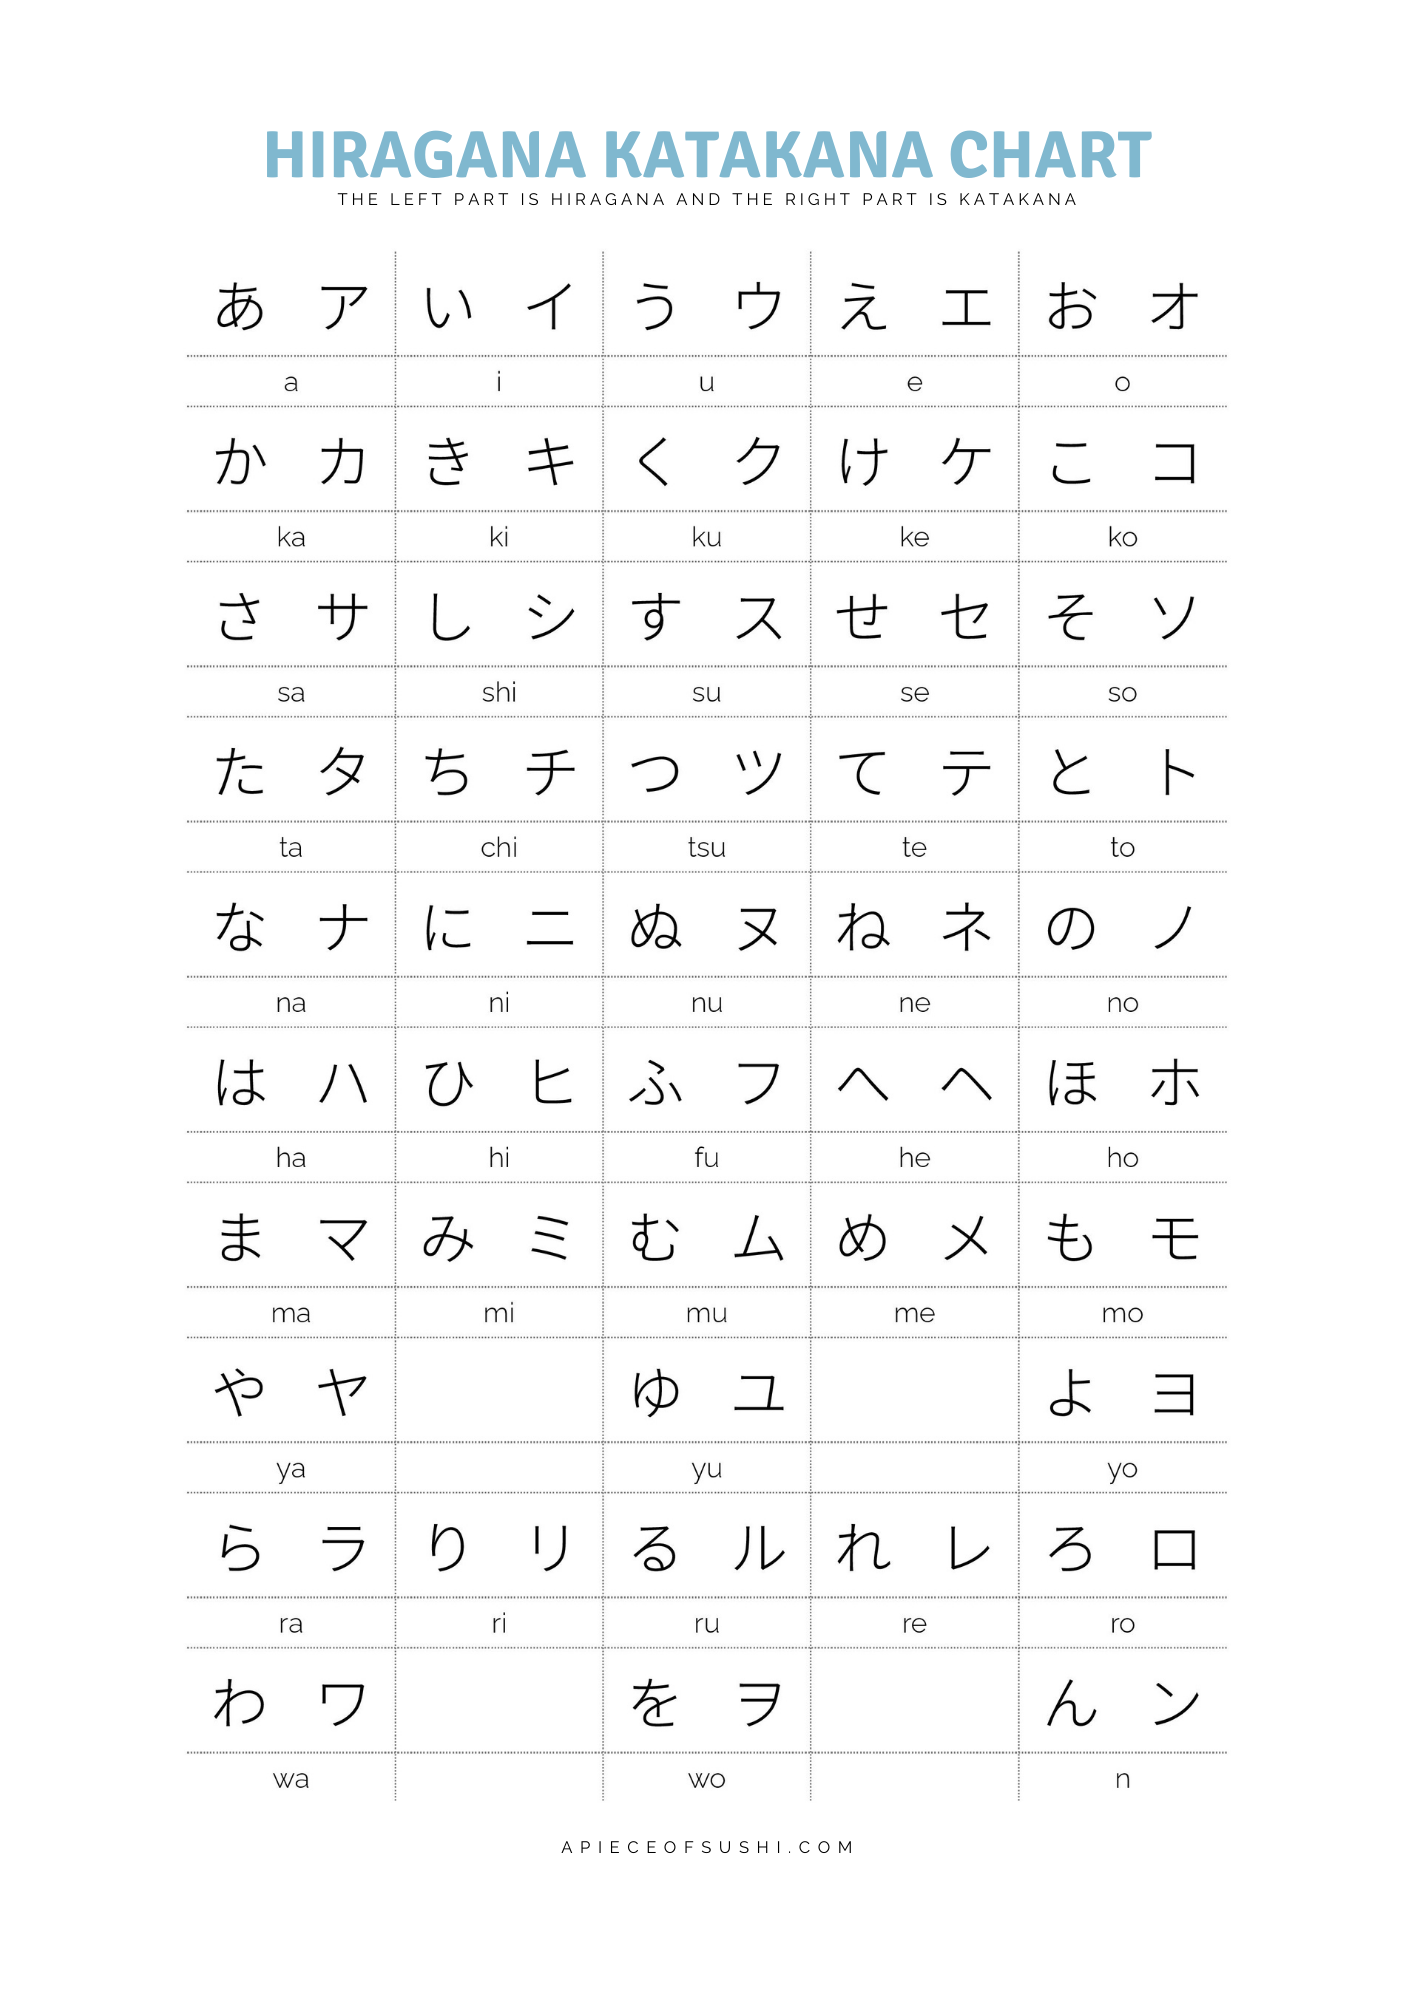 hiragana-katakana-chart-free-download-printable-pdf-with-3-japanese